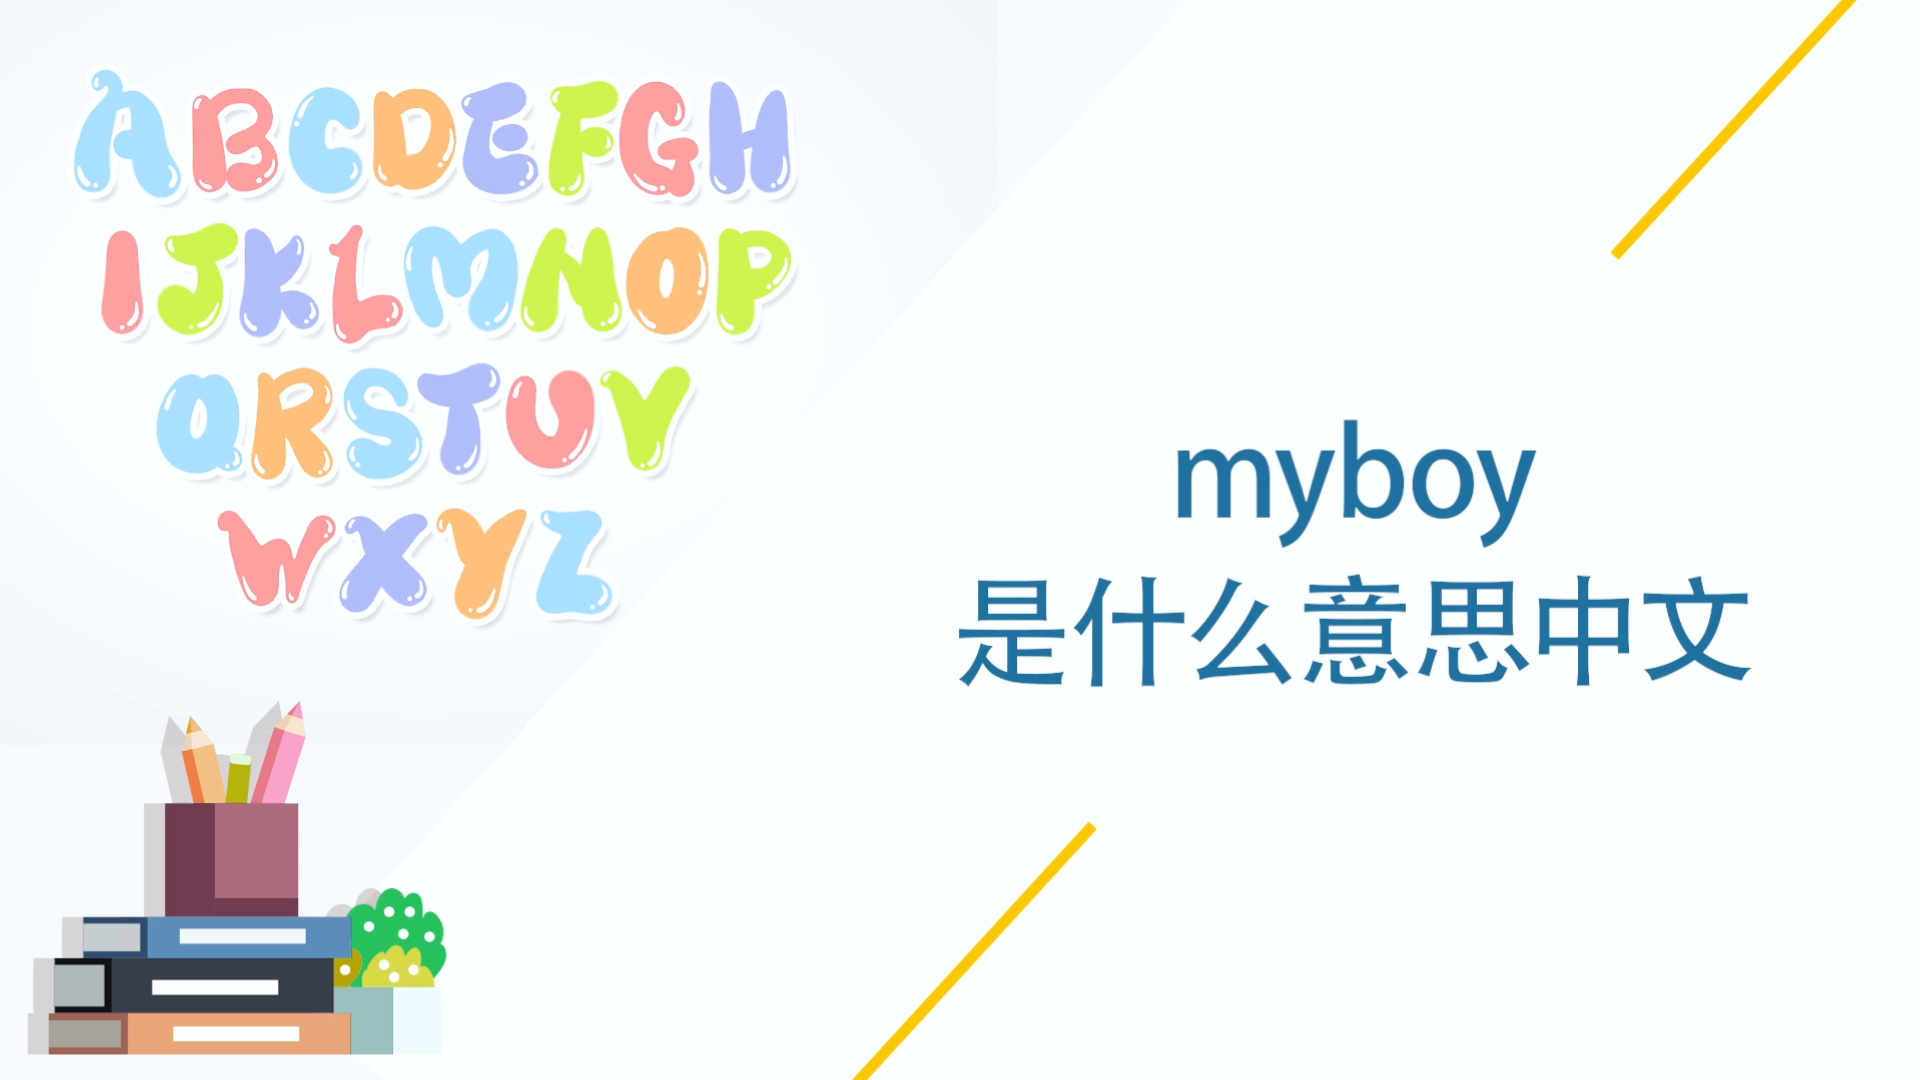 myboy是什么意思中文